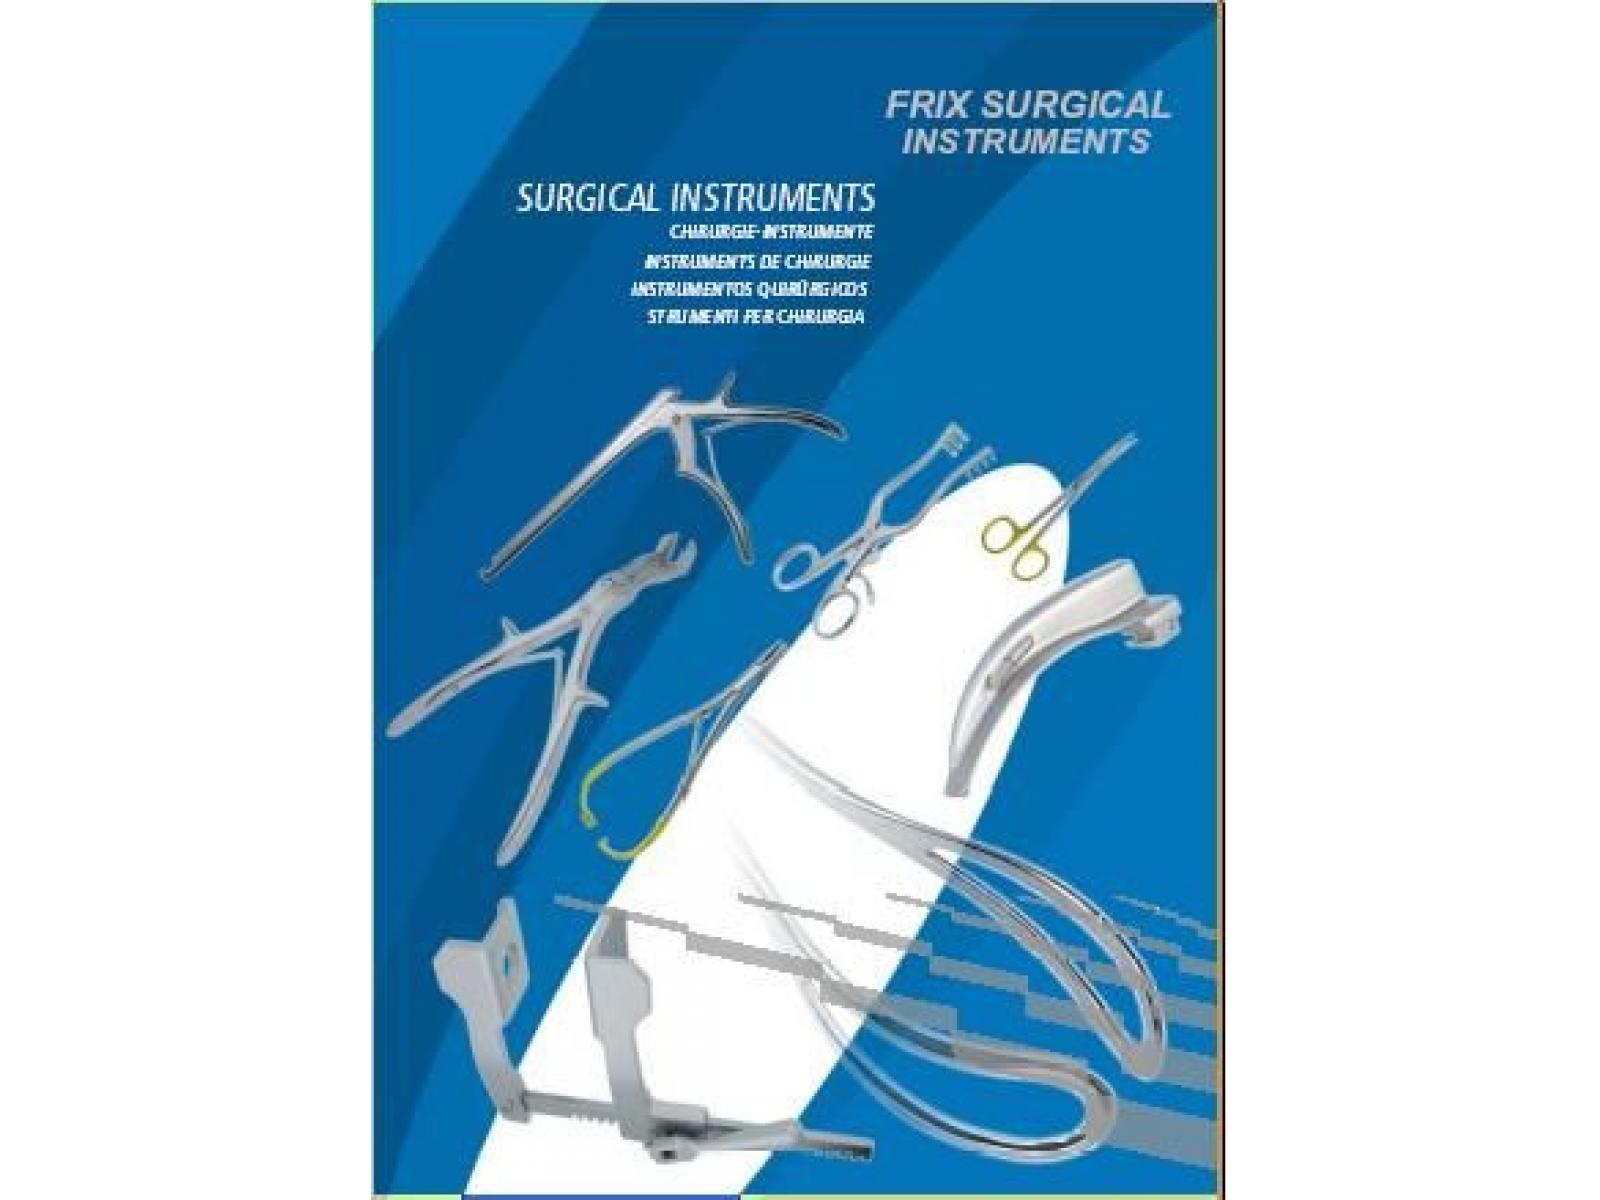 Frix Surgical Instruments - SURGICAL_INSTRUMENTS.jpg